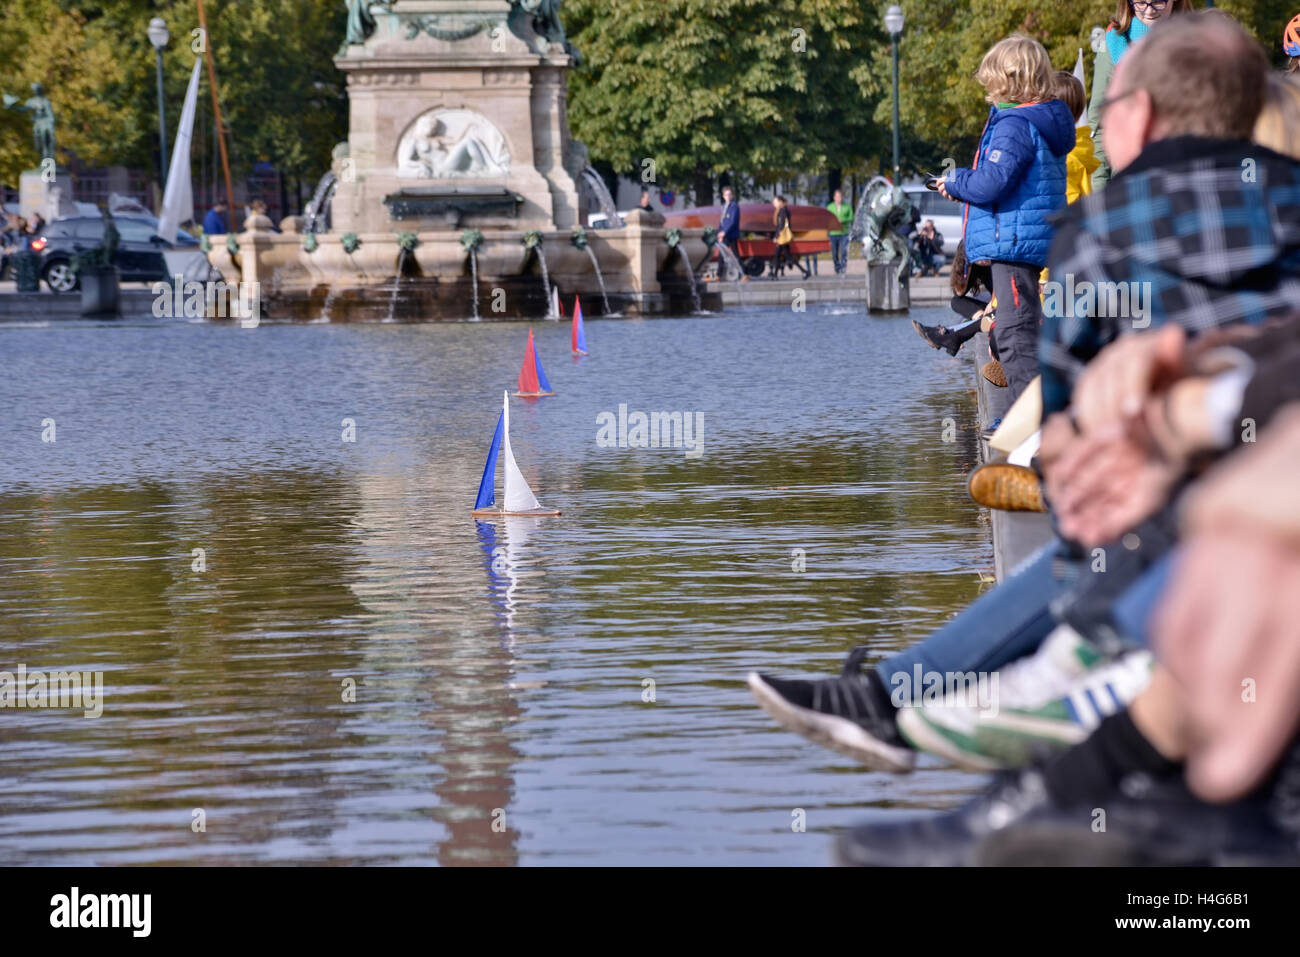 Bruxelles, Belgique. 15 octobre, 2016. Les gens jouent avec des modèles de bateaux à voile pendant l'événement de divertissement public en secteur Saint Vismet Cath Sur Mer le 15 octobre 2016 à Bruxelles, Belgique. Credit : Skyfish/Alamy Live News Banque D'Images